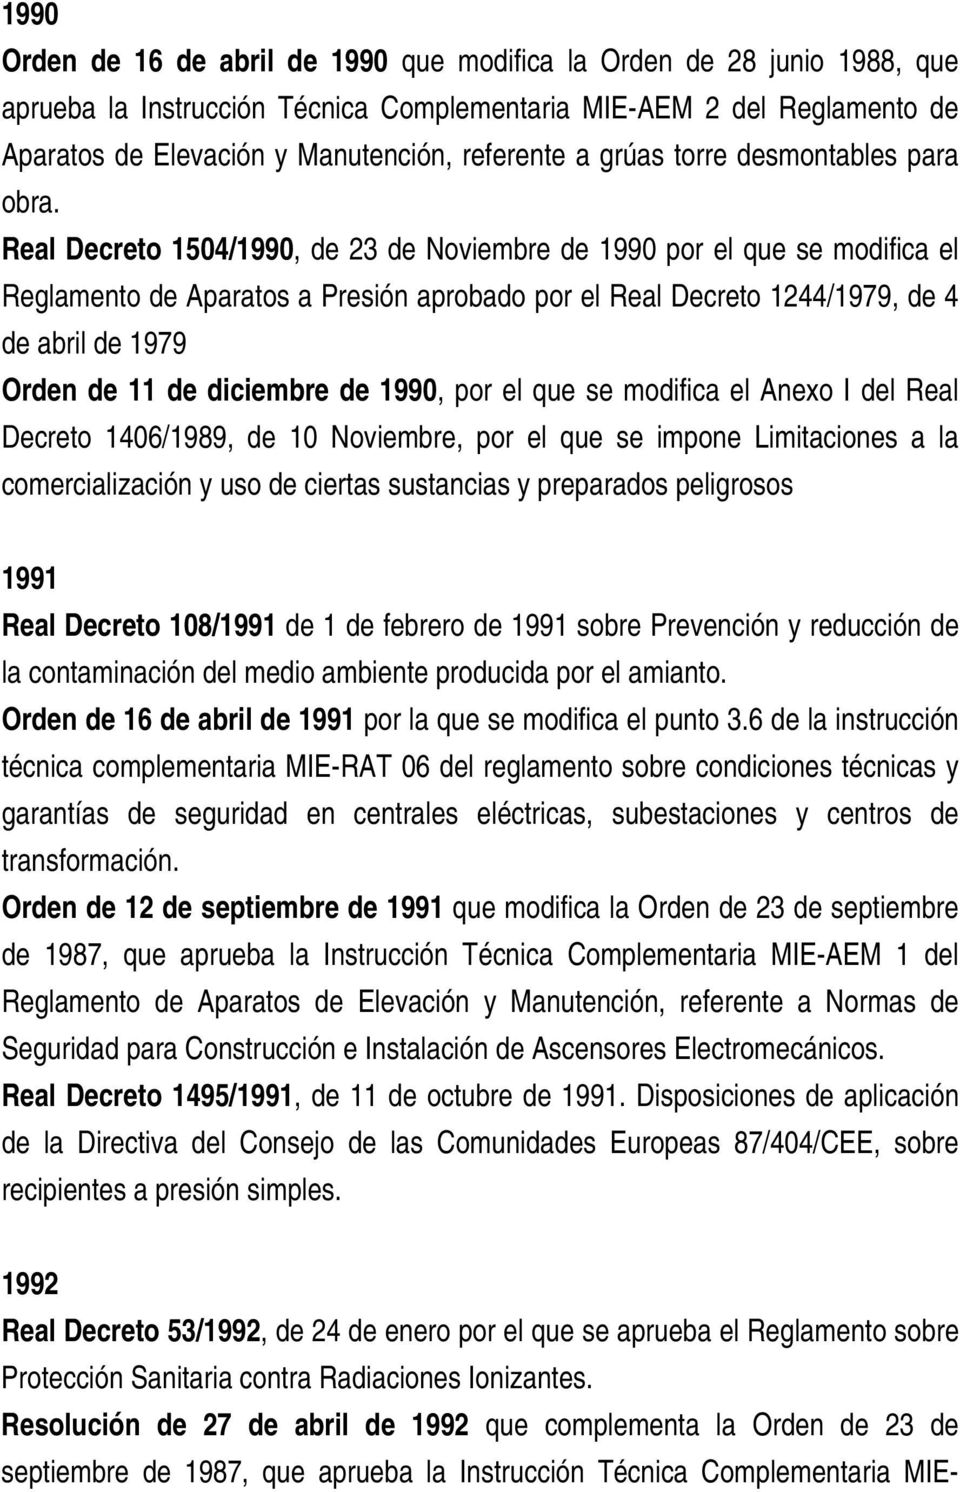 Real Decreto 1504/1990, de 23 de Noviembre de 1990 por el que se modifica el Reglamento de Aparatos a Presión aprobado por el Real Decreto 1244/1979, de 4 de abril de 1979 Orden de 11 de diciembre de